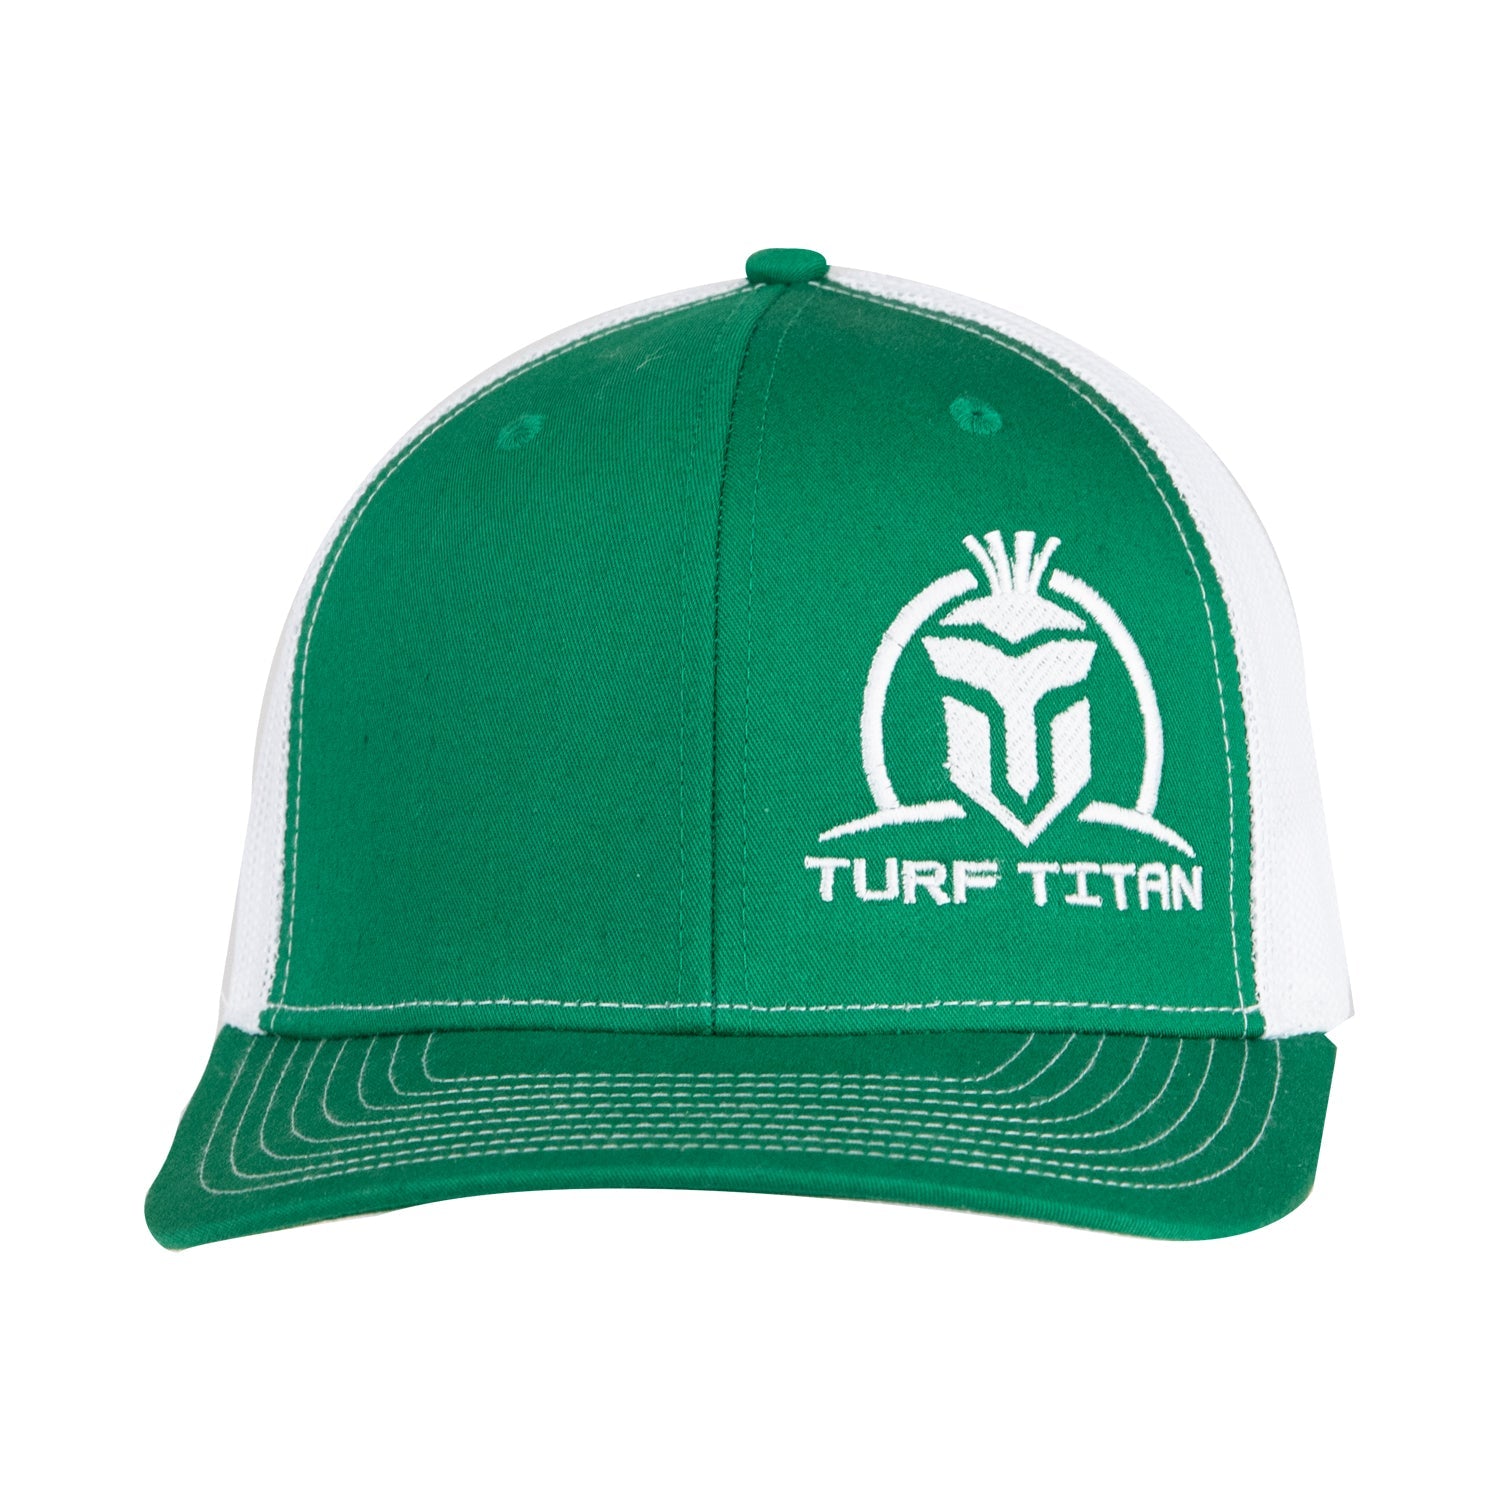 » Green Turf Titan Trucker Hat (100% off)